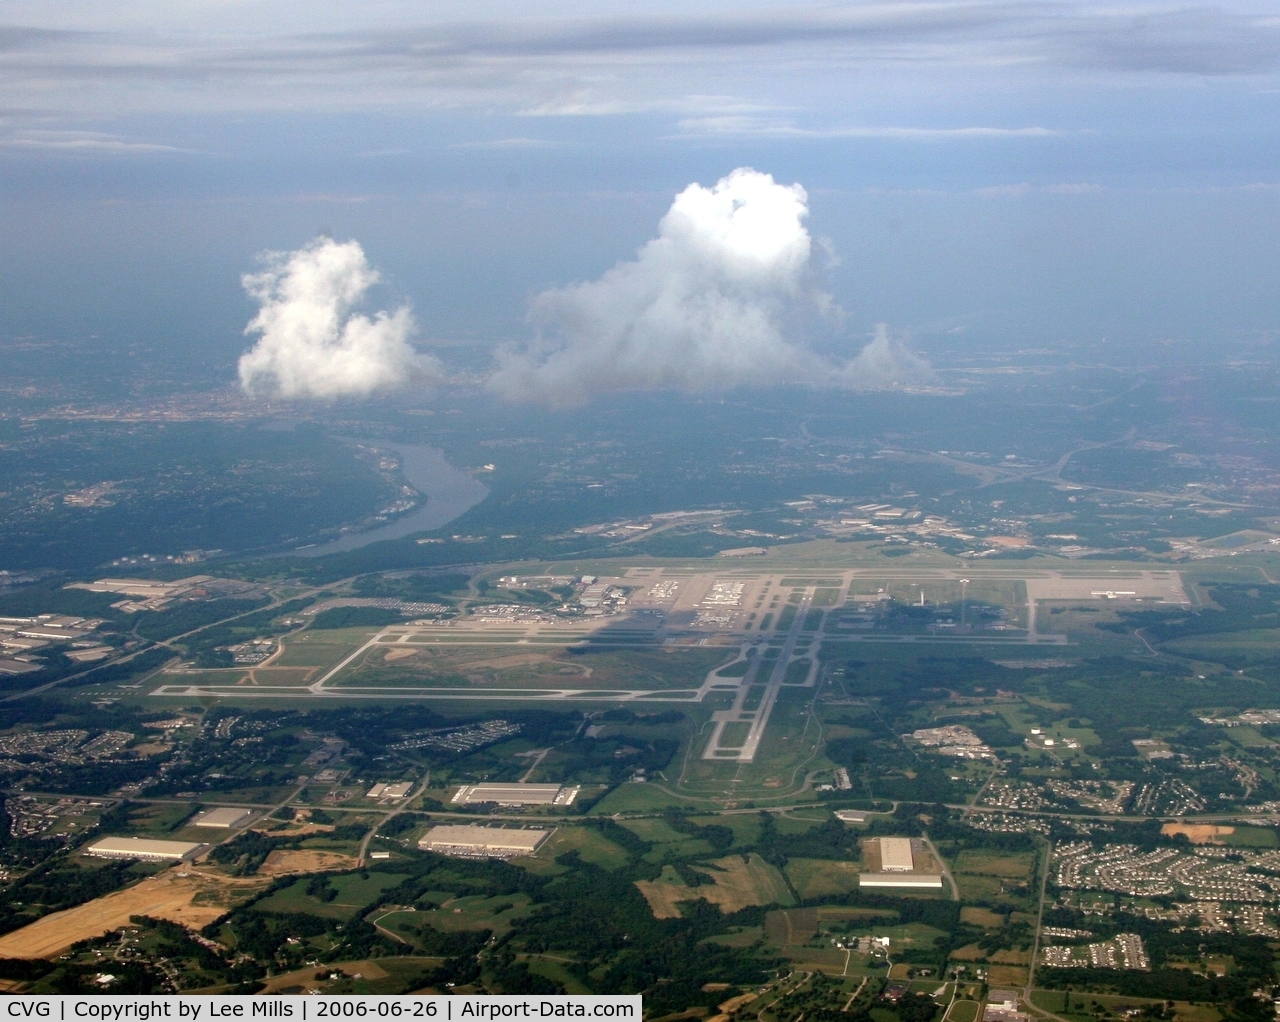 Cincinnati/northern Kentucky International Airport (CVG) - Looking East down Runway 9 in CVG. On downwind for the new Runway 18R.